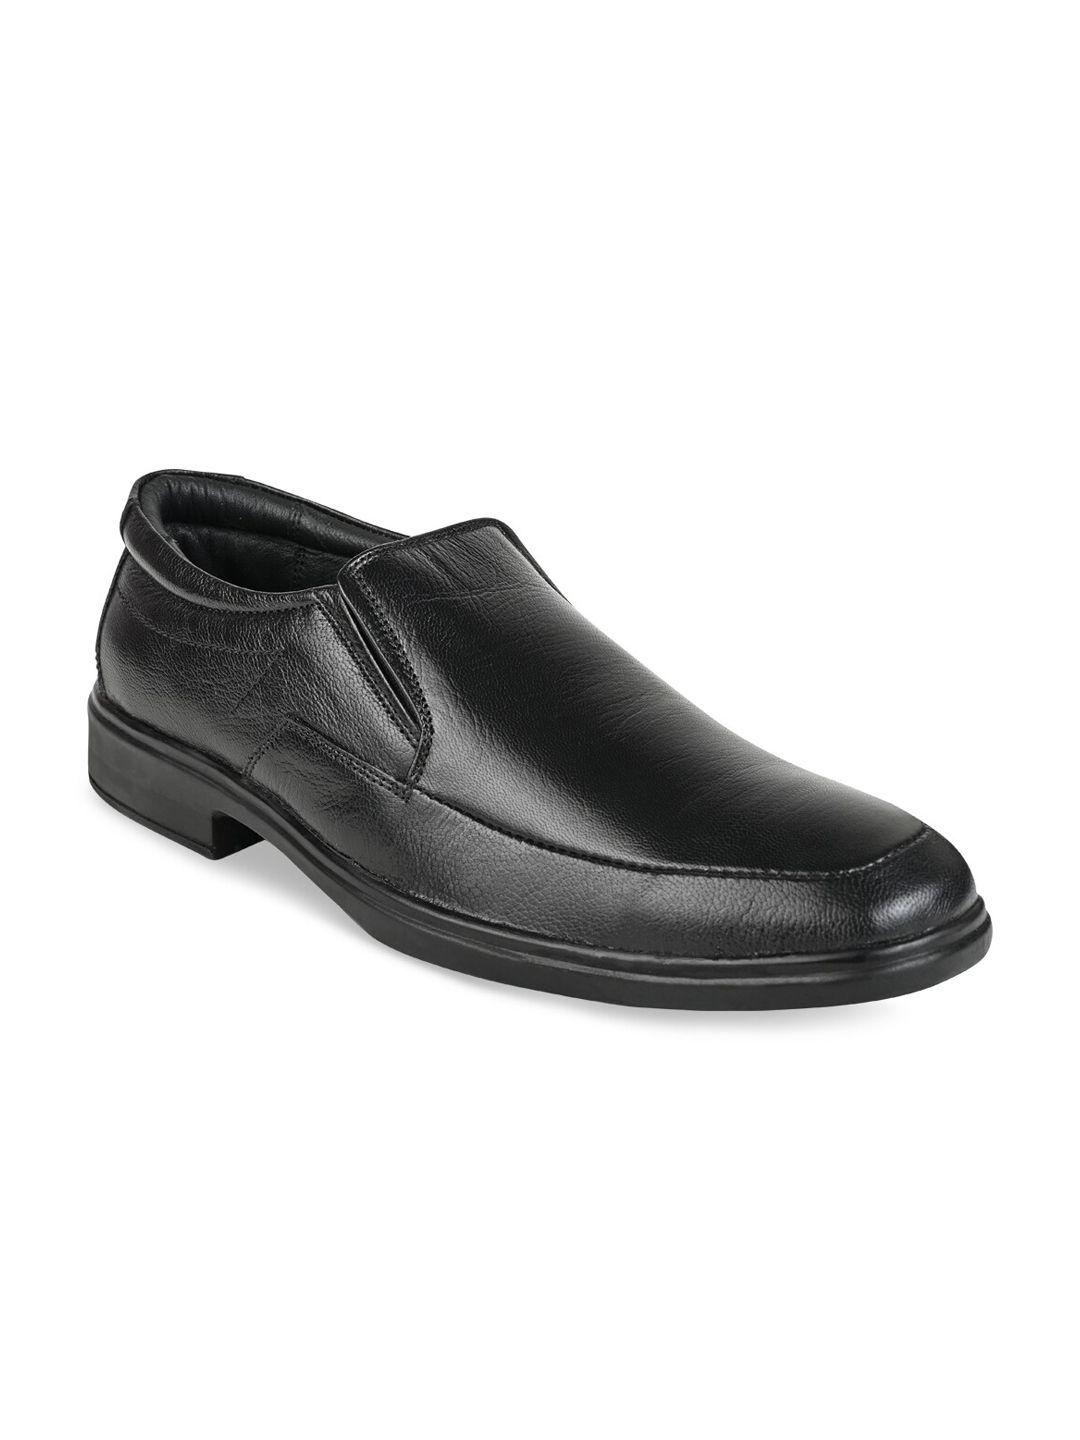 regal-men-black-solid-formal-slip-on-formal-shoes